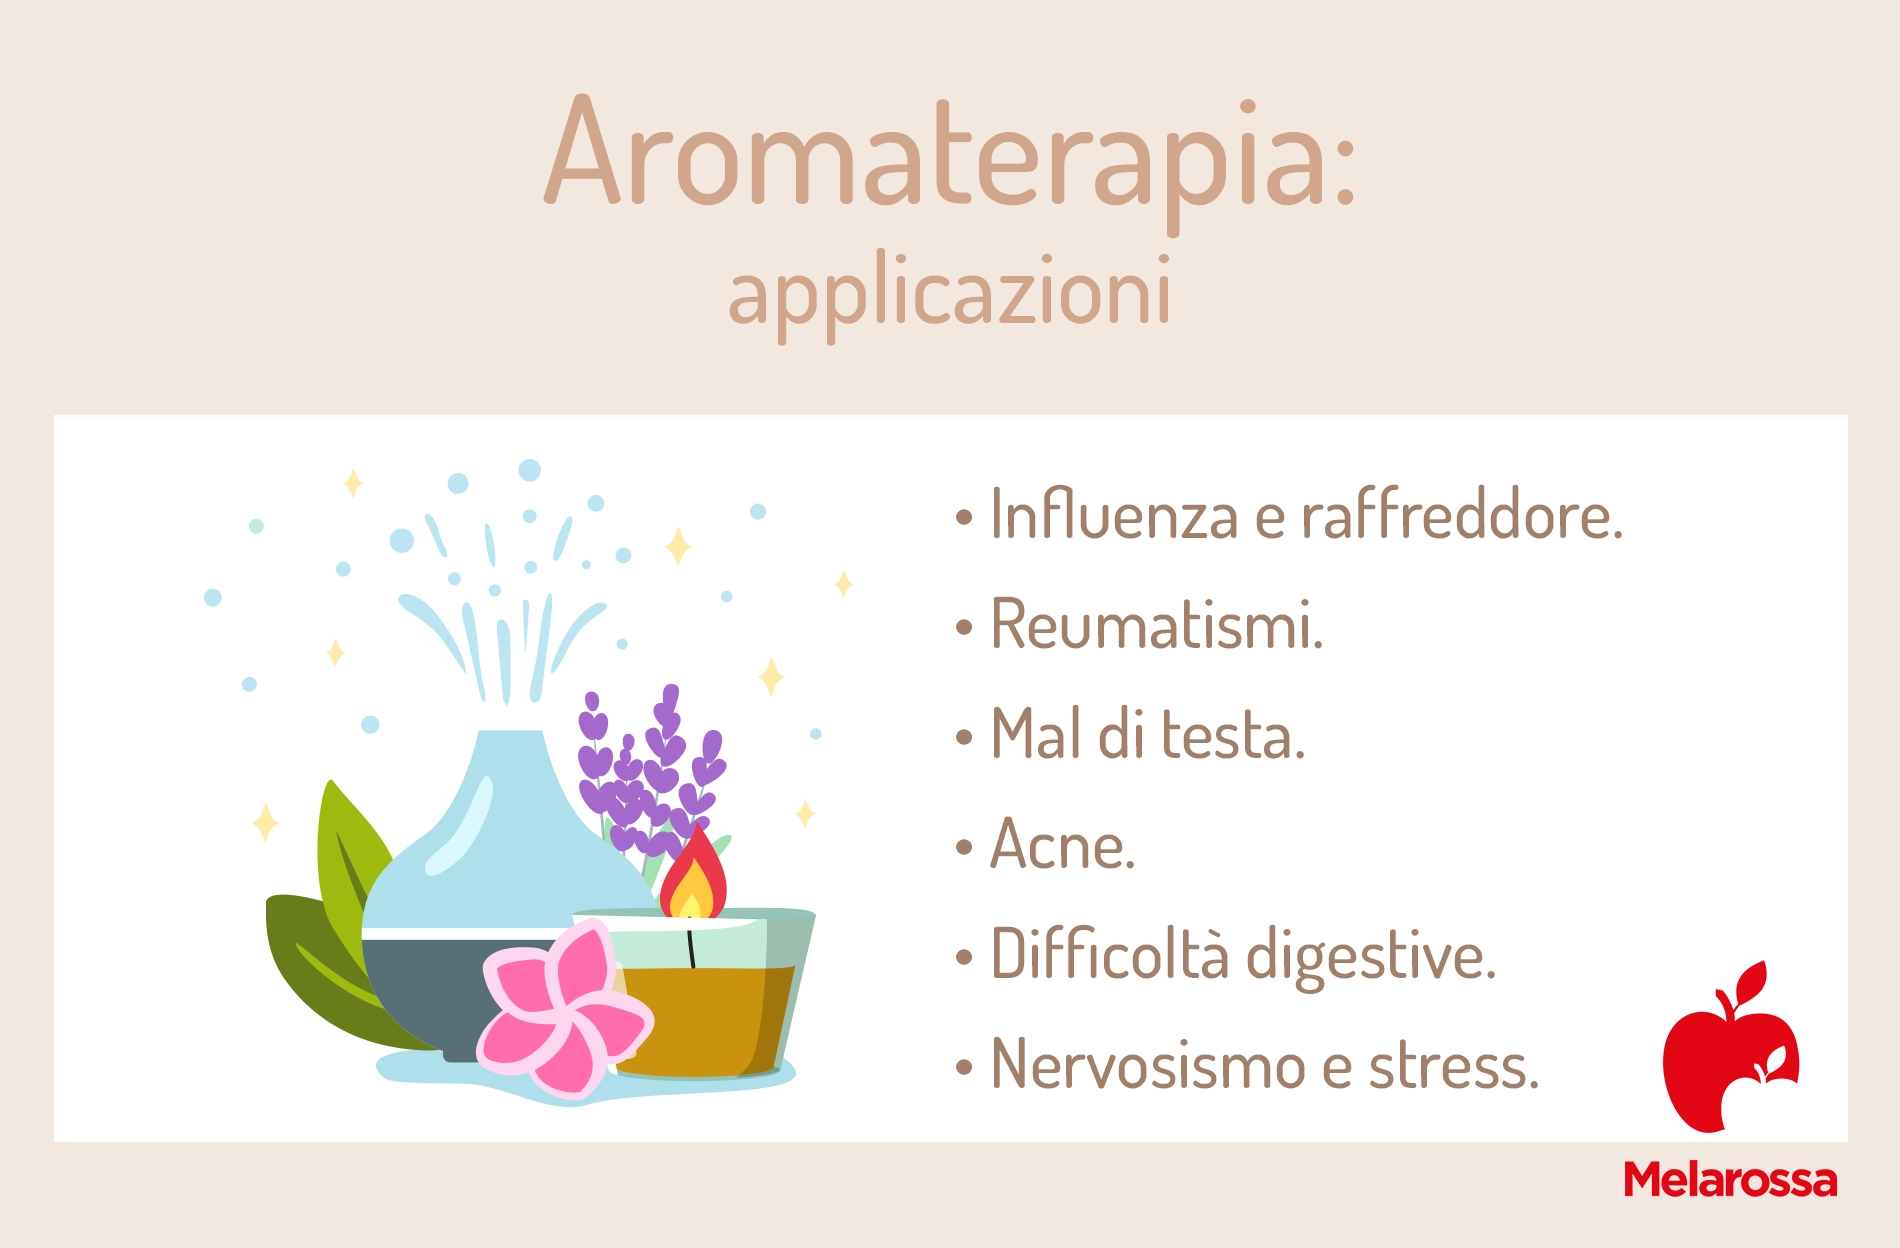 I benefici degli Oli Essenziali e dell'Aromaterapia